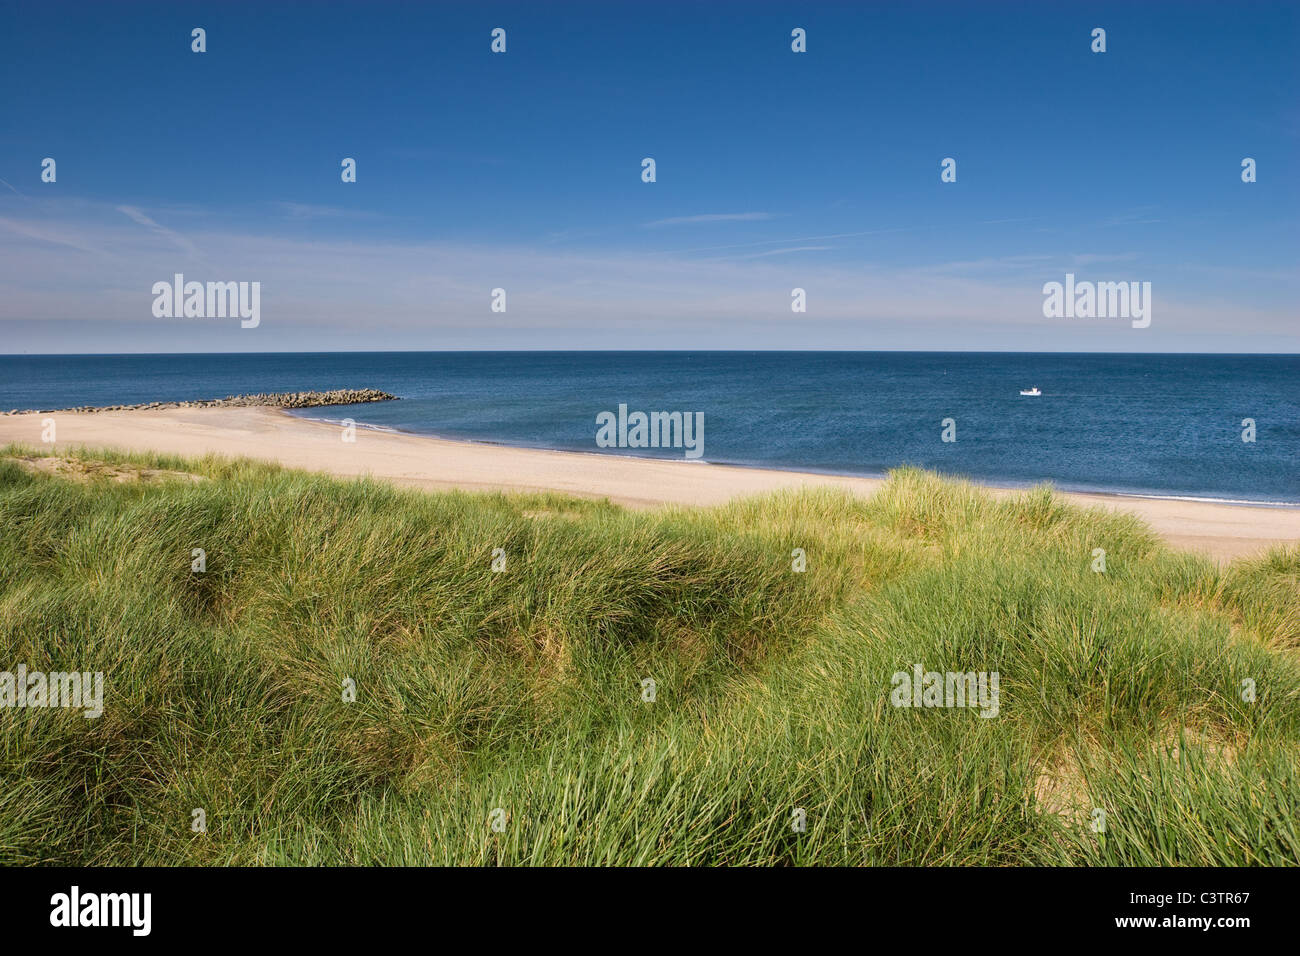 Bella spiaggia deserta di Agger, nello Jutland, Danimarca con erba e dune Foto Stock